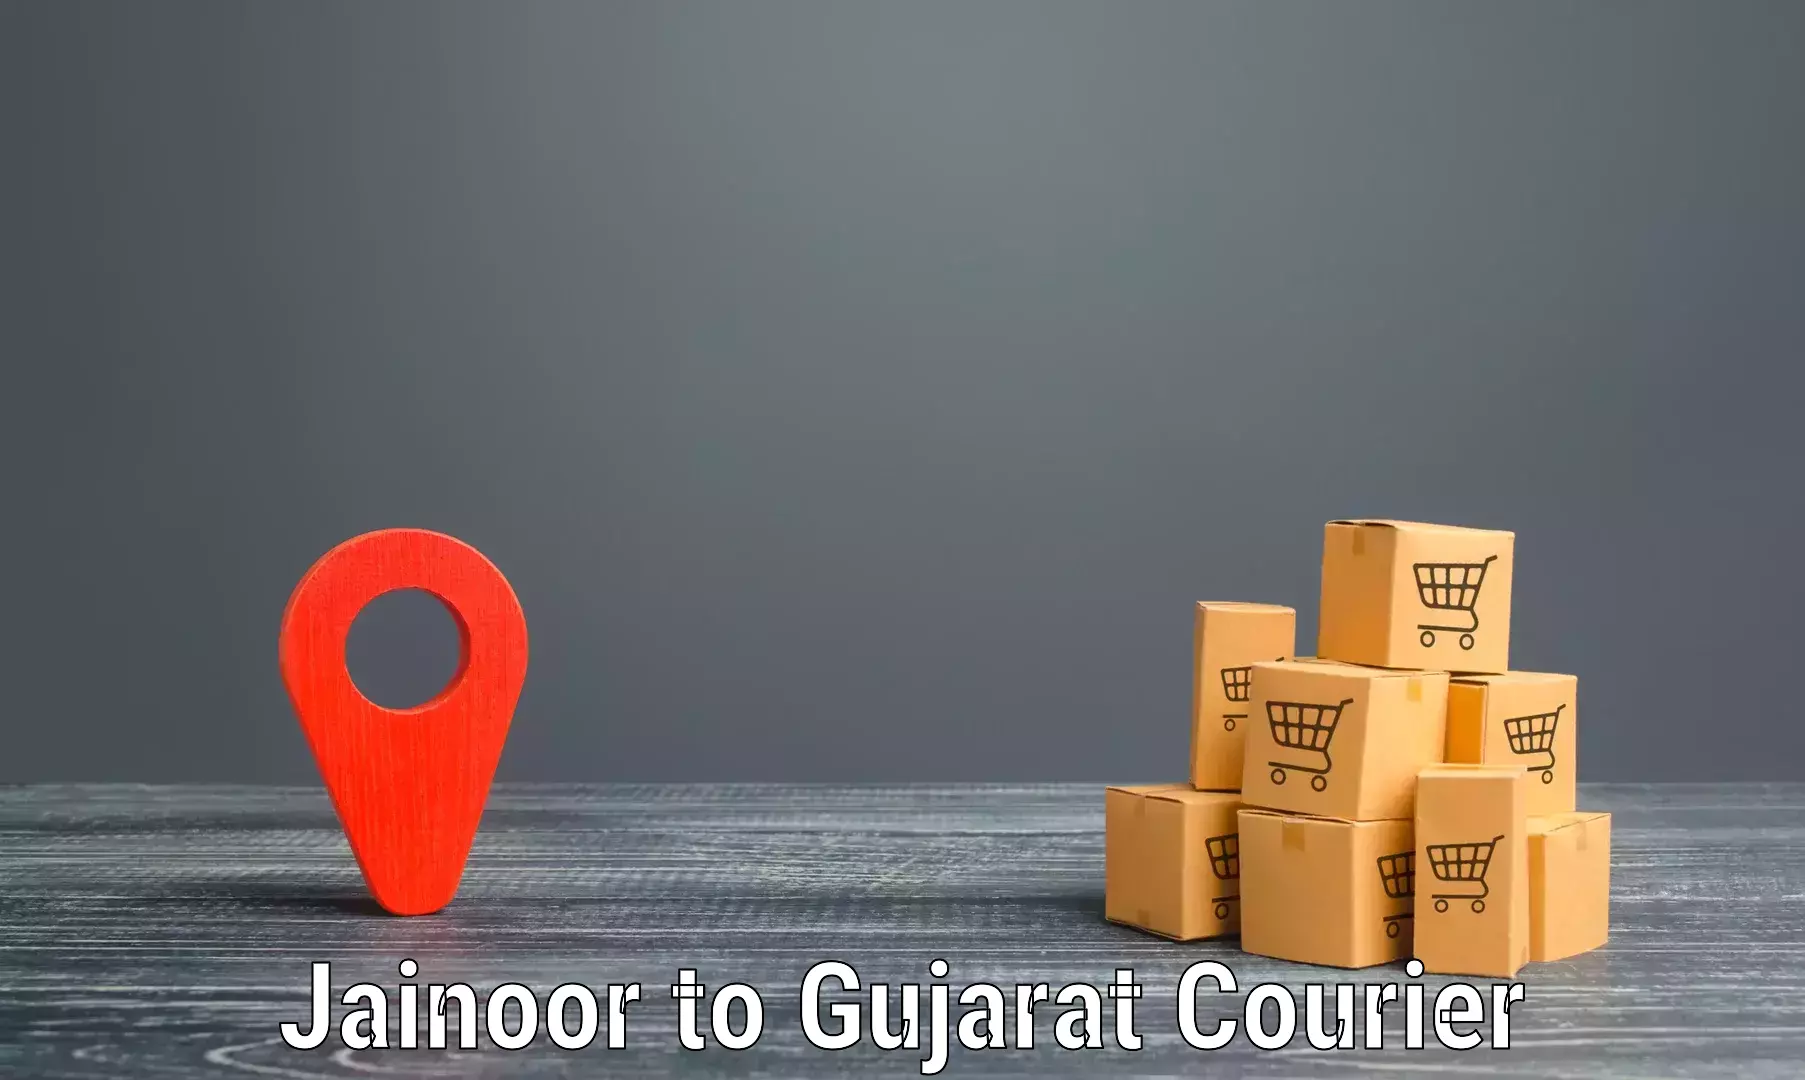 Nationwide courier service Jainoor to Kalol Gujarat